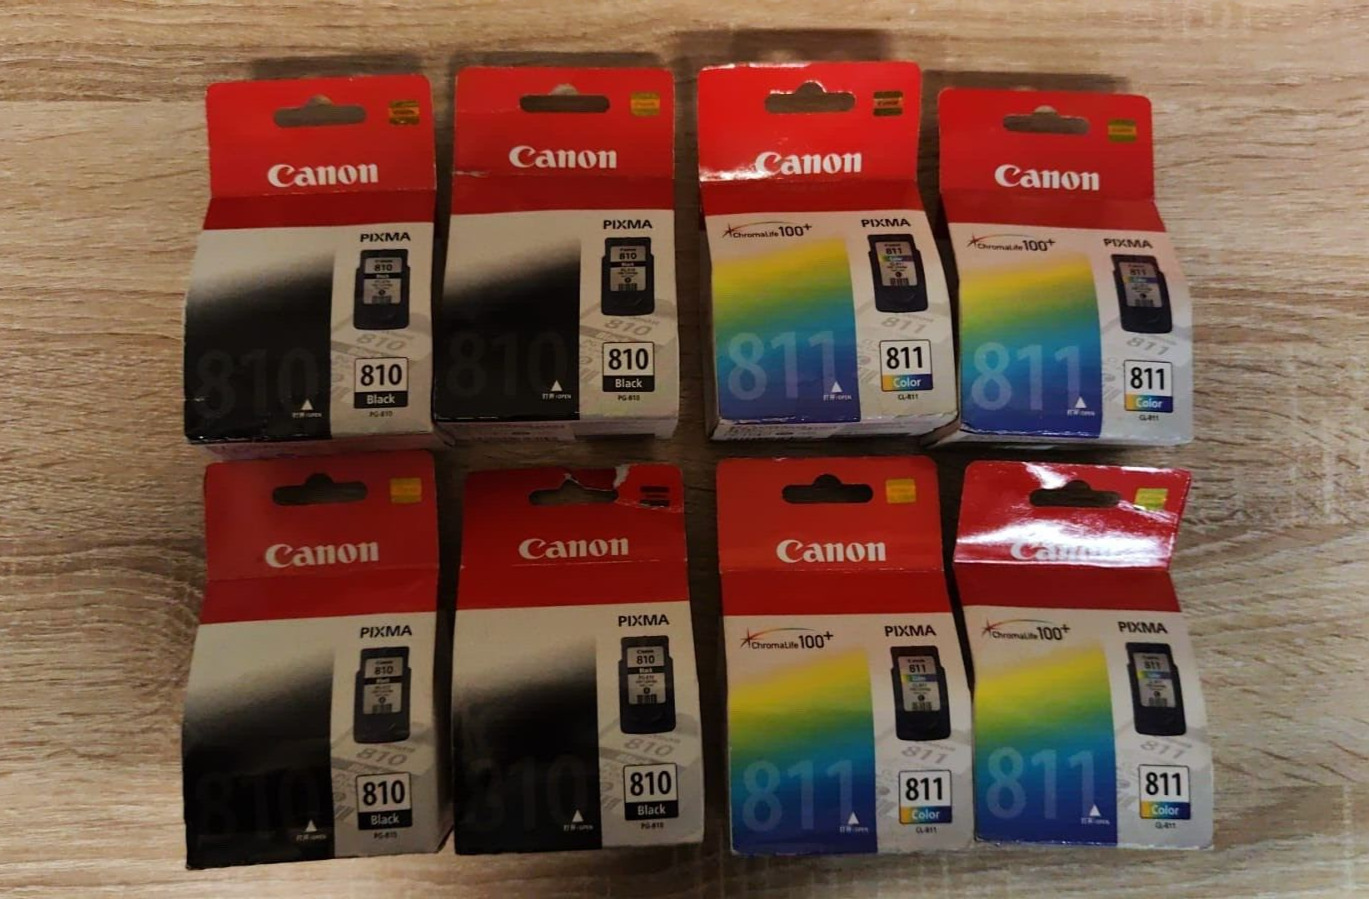 8x Genuine Canon PIXMA PG-810 Black & CL-811 Colour Ink Cartridges